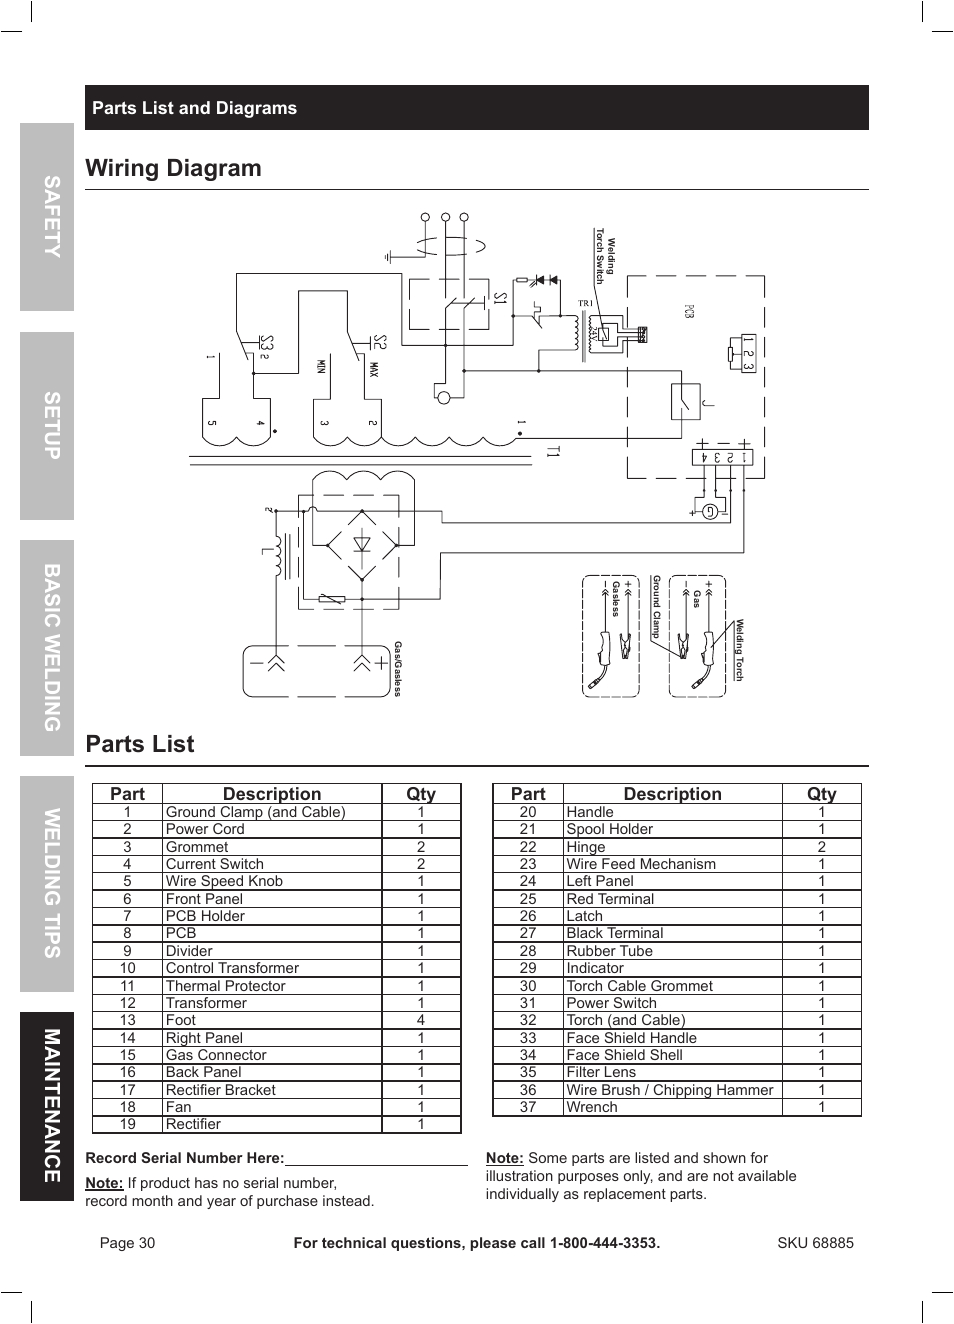 wiring diagram parts list chicago electric wire feed welder mig wiring diagram for chicago electric welder